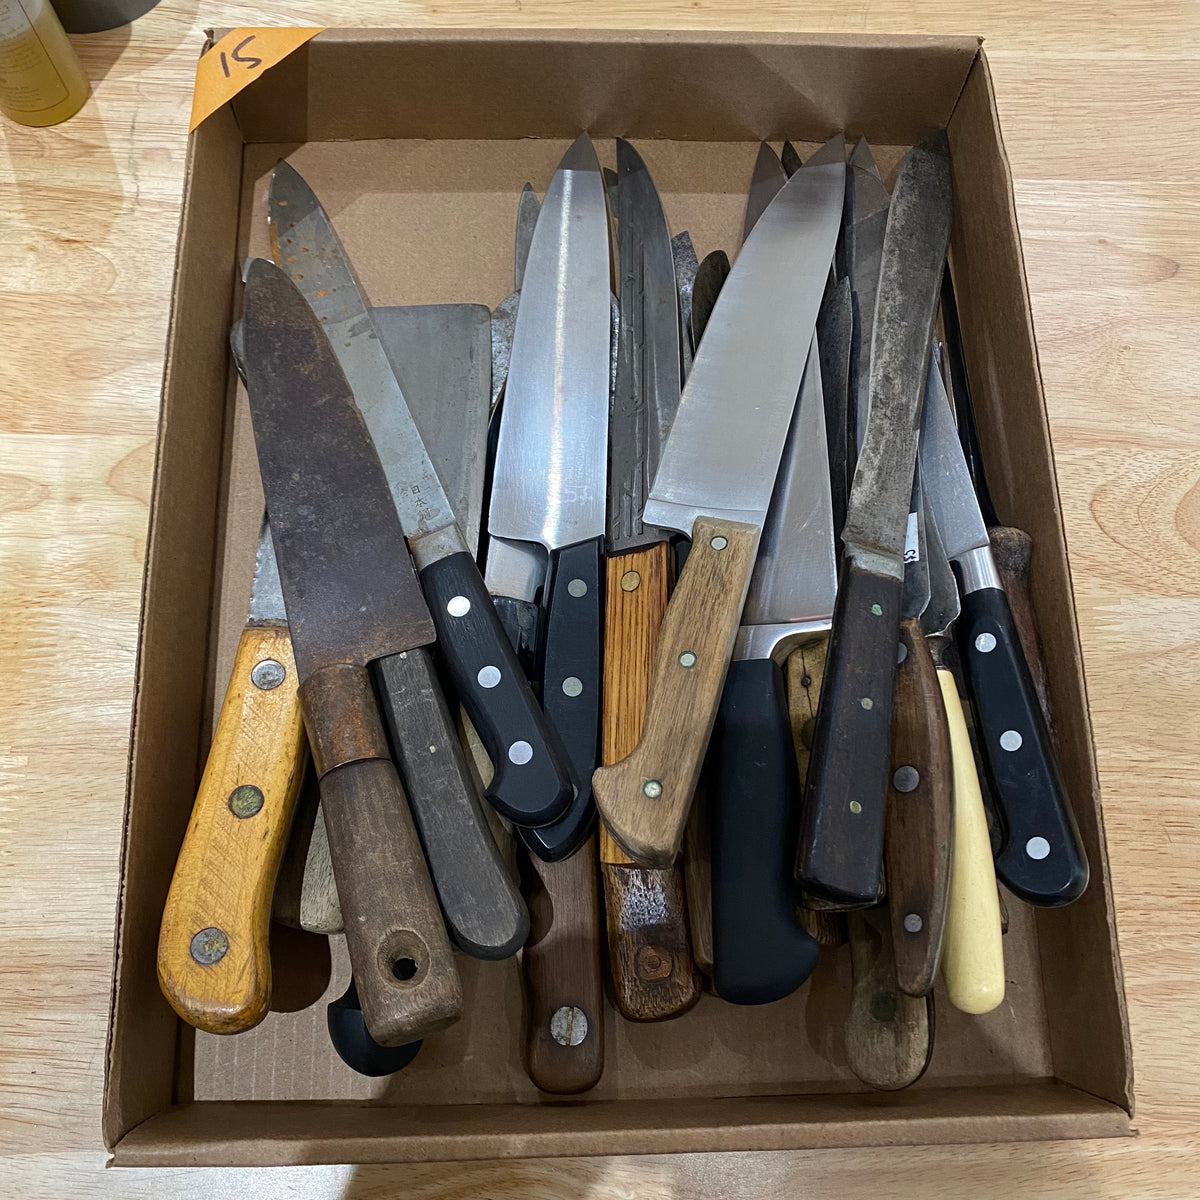 Bargain Bin Knife - $15 each